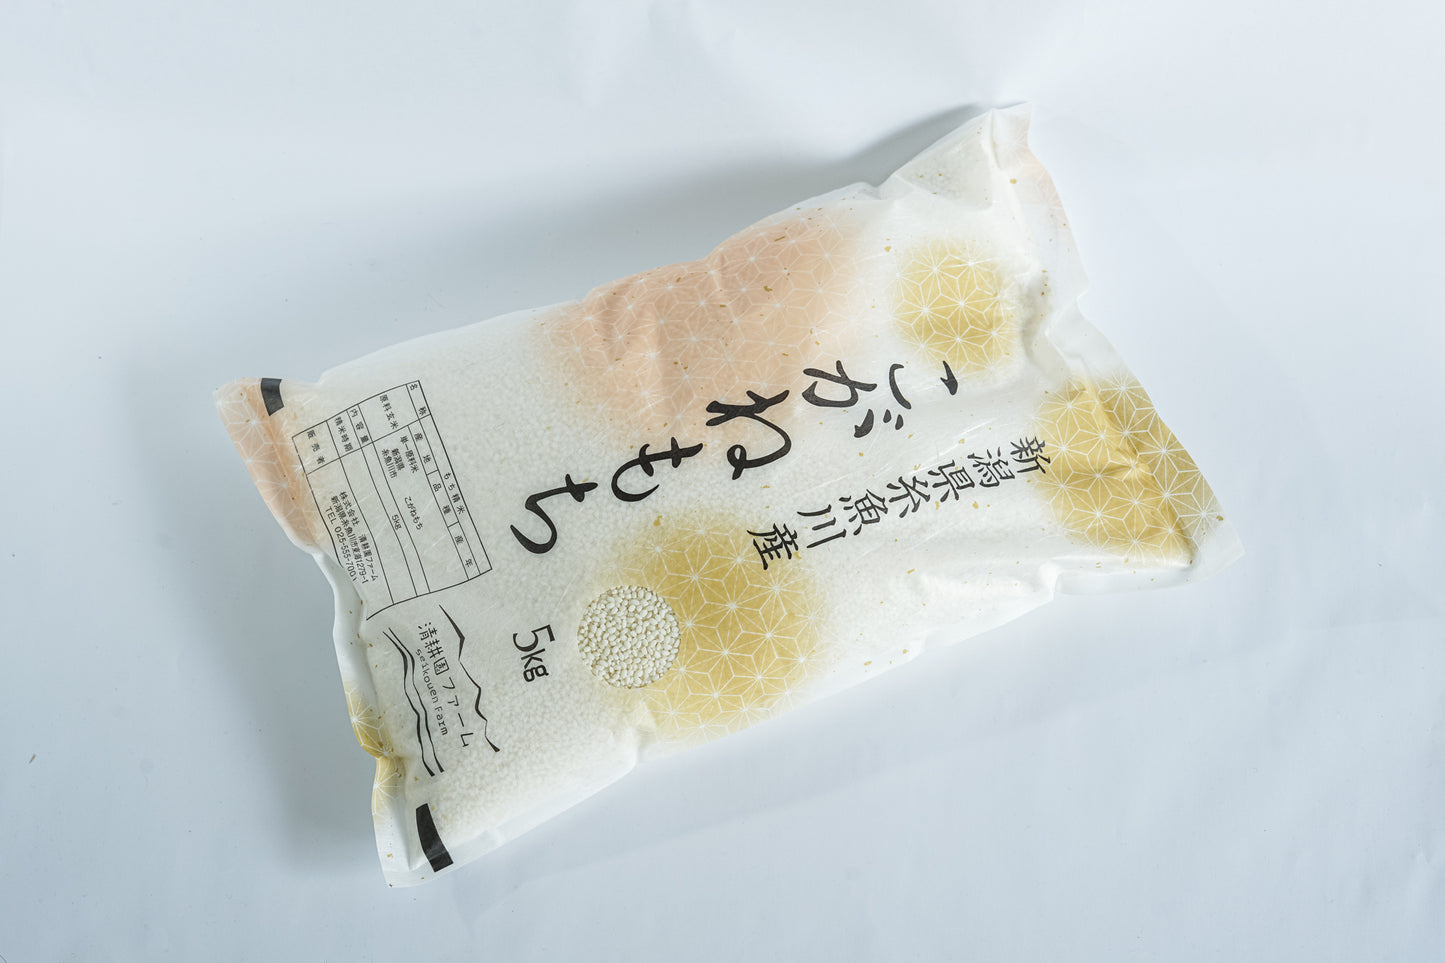 【R5年産】糸魚川産「こがねもち」白米(1.5kg・5kg)